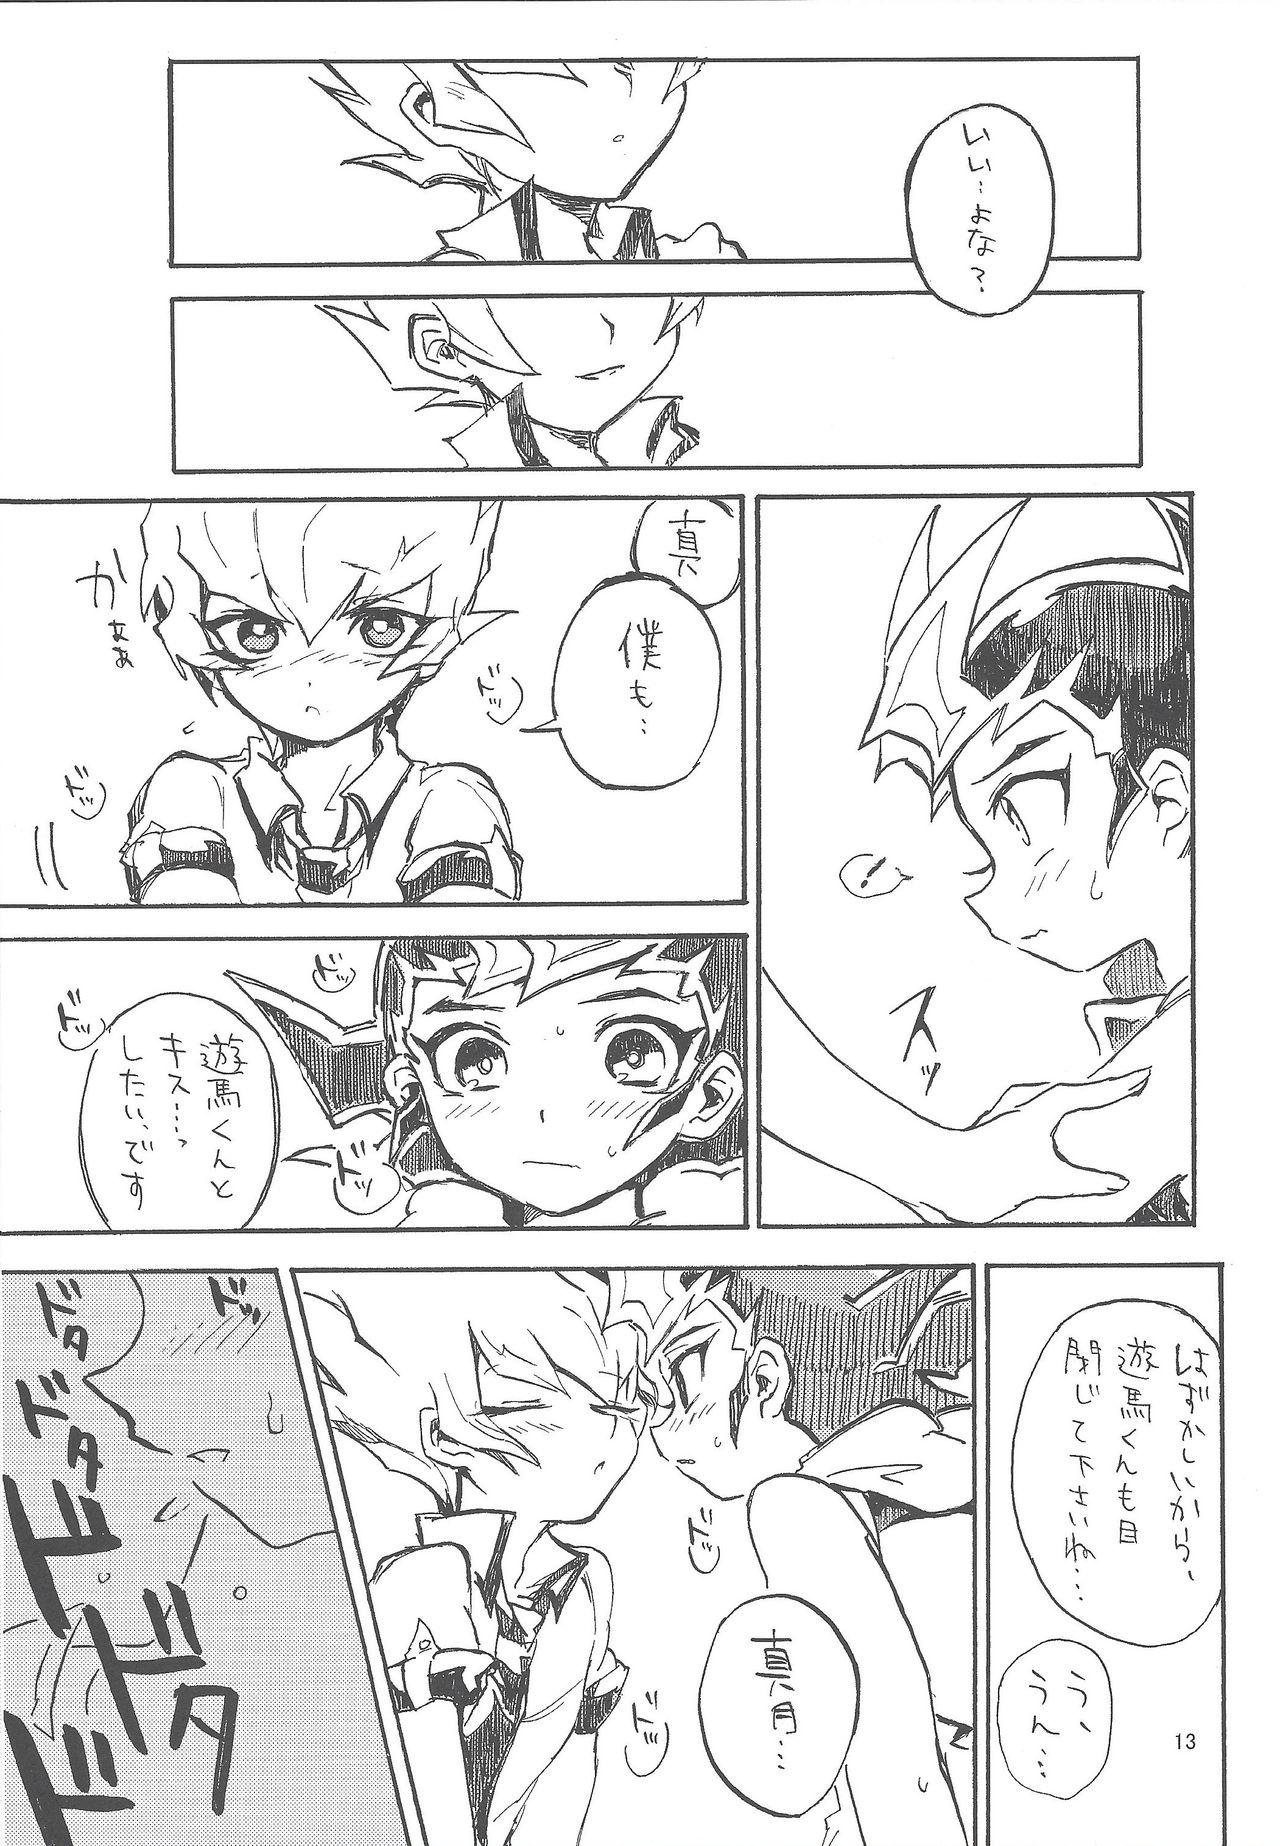 Threesome Mihitsu ni koi. - Yu-gi-oh zexal Ex Gf - Page 12